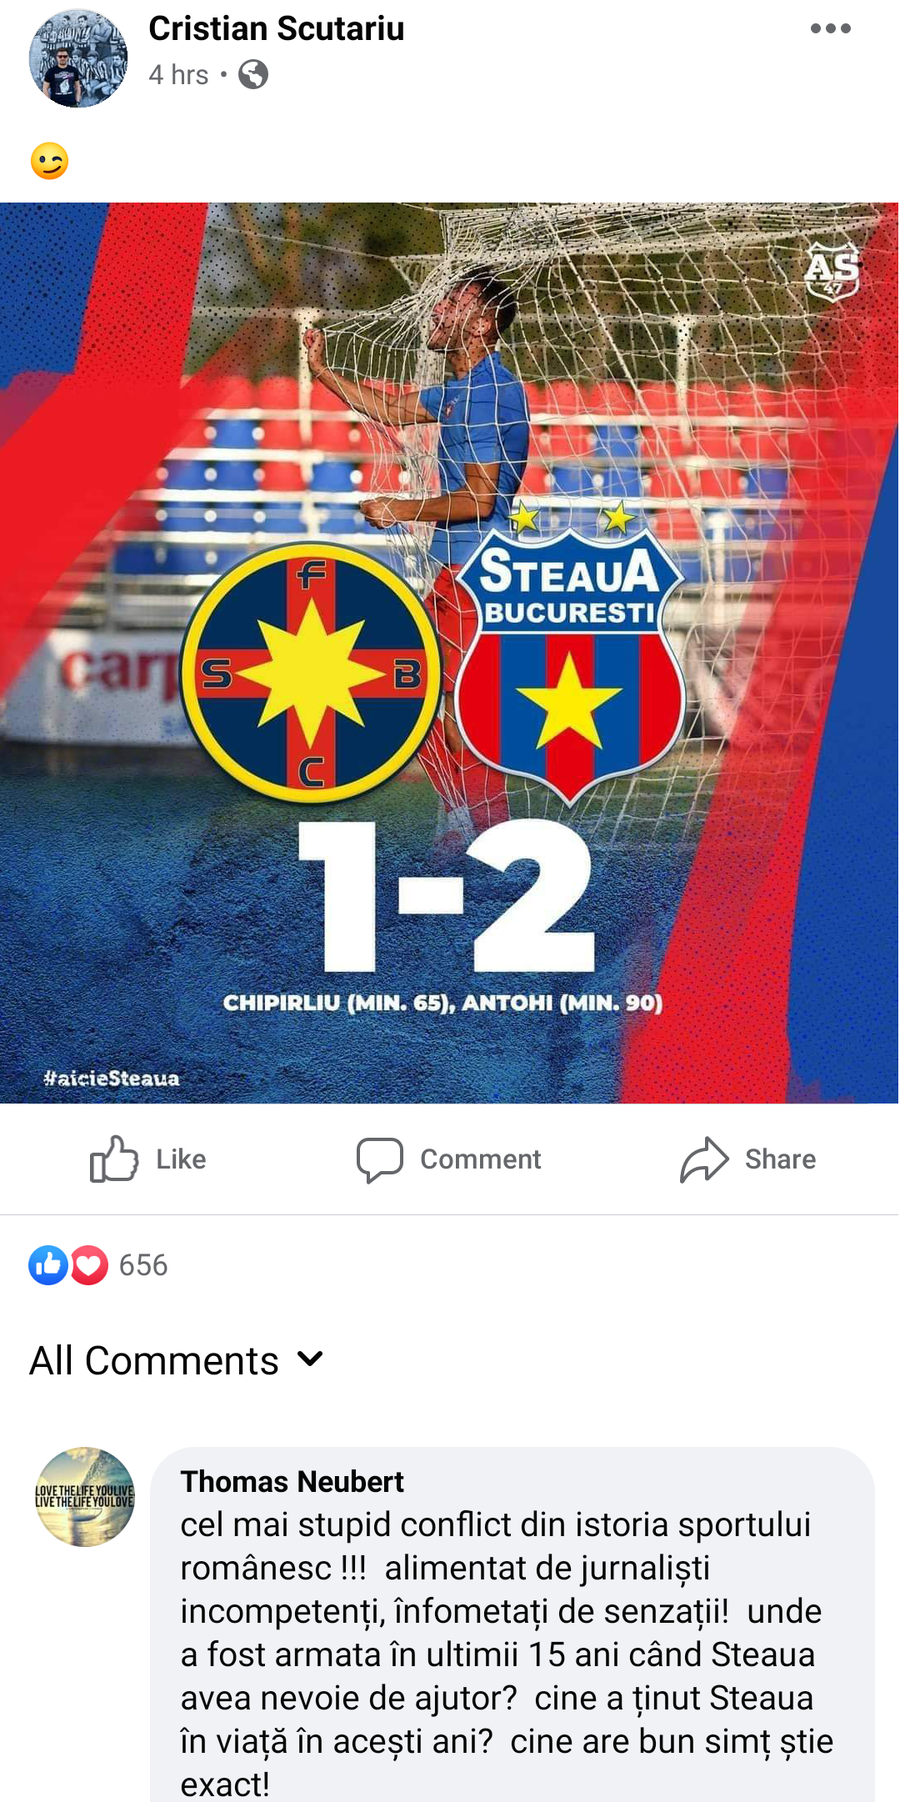 FCSB vs. STEAUA. Thomas Neubert s-a enervat și a comentat pe pagina de Facebook a unui jurnalist: „Cel mai stupid conflict din istoria sportului românesc!”